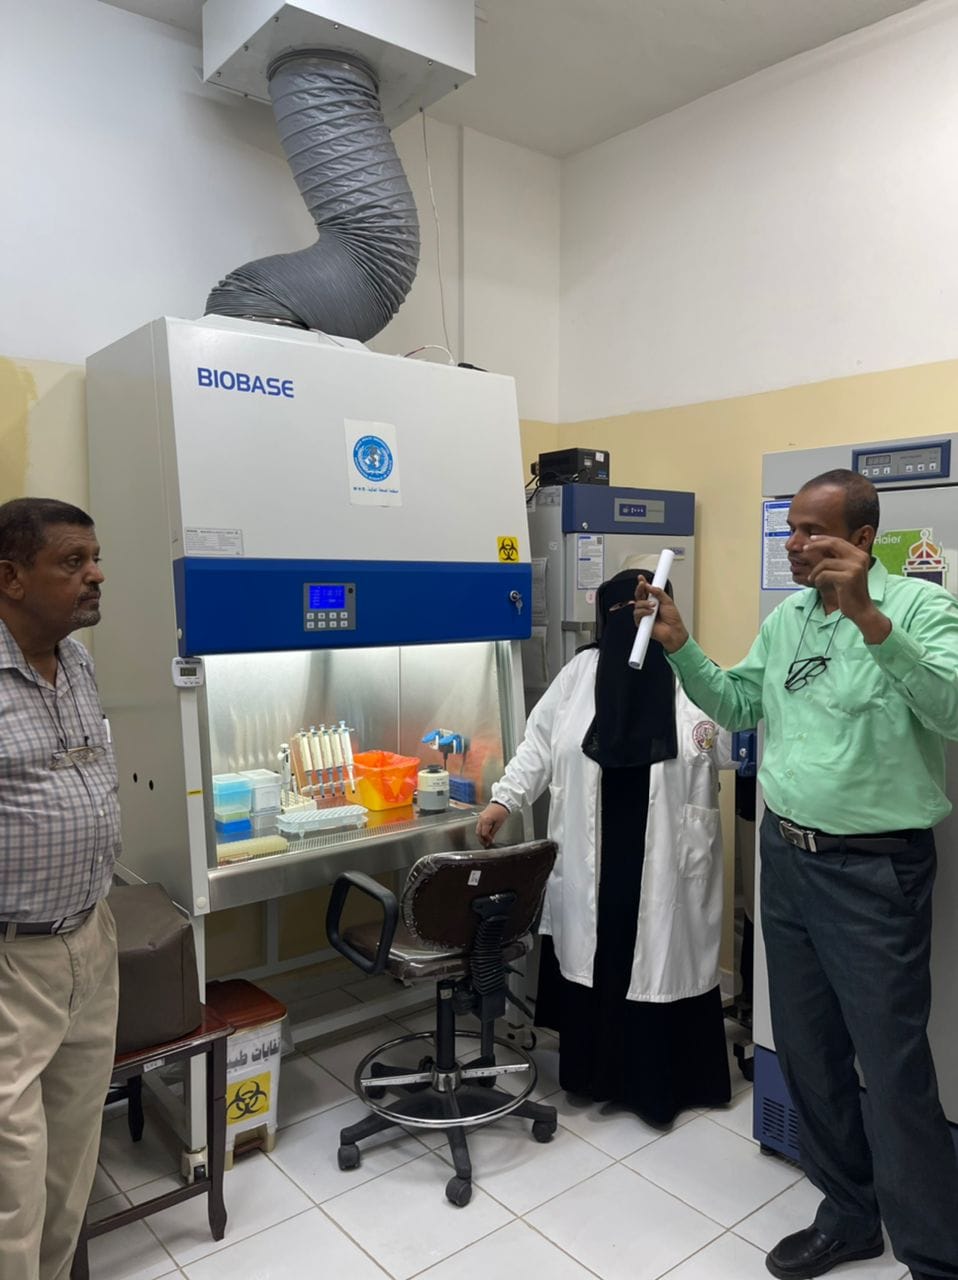 زيارة علمية لطلبة المختبرات الطبية إلى المركز الوطني لمختبرات الصحة العامة المركزية بمحافظة الحديدة‎.